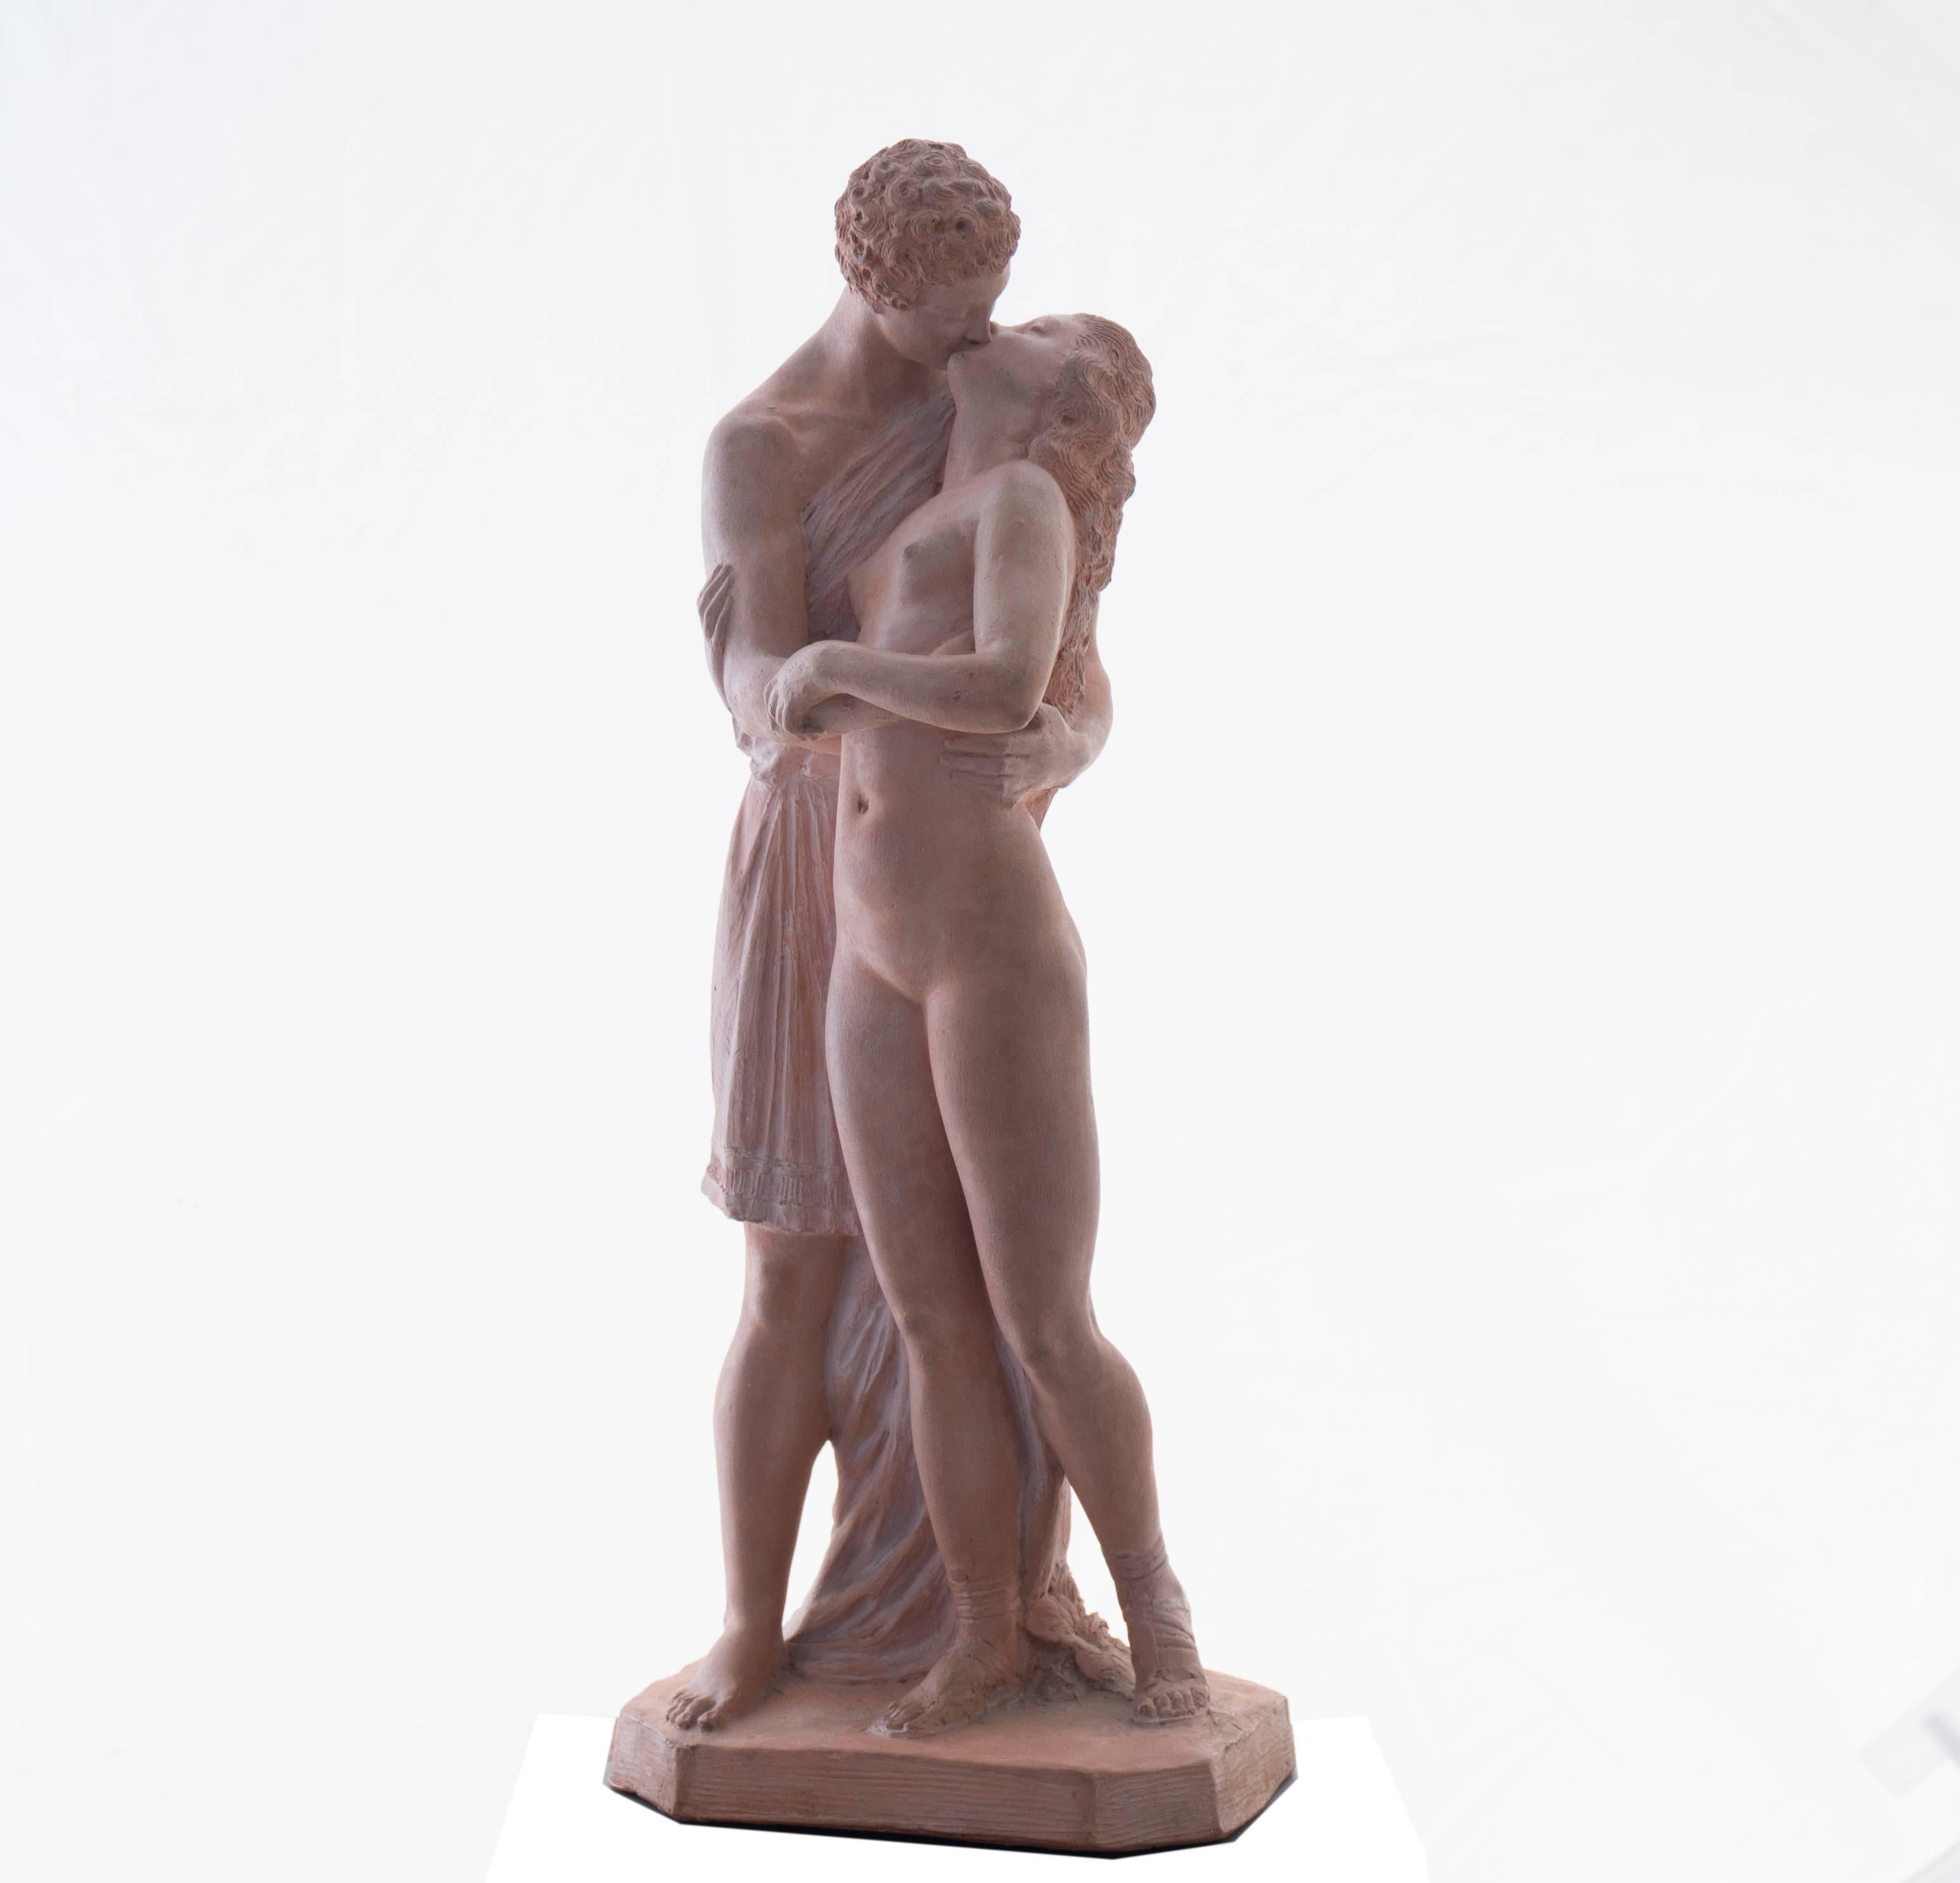 Joseph J Emmanuel Cormier Figurative Sculpture - 'The Kiss', Neo-classical Terracotta Figurative Statue, Petit Palais, Paris 